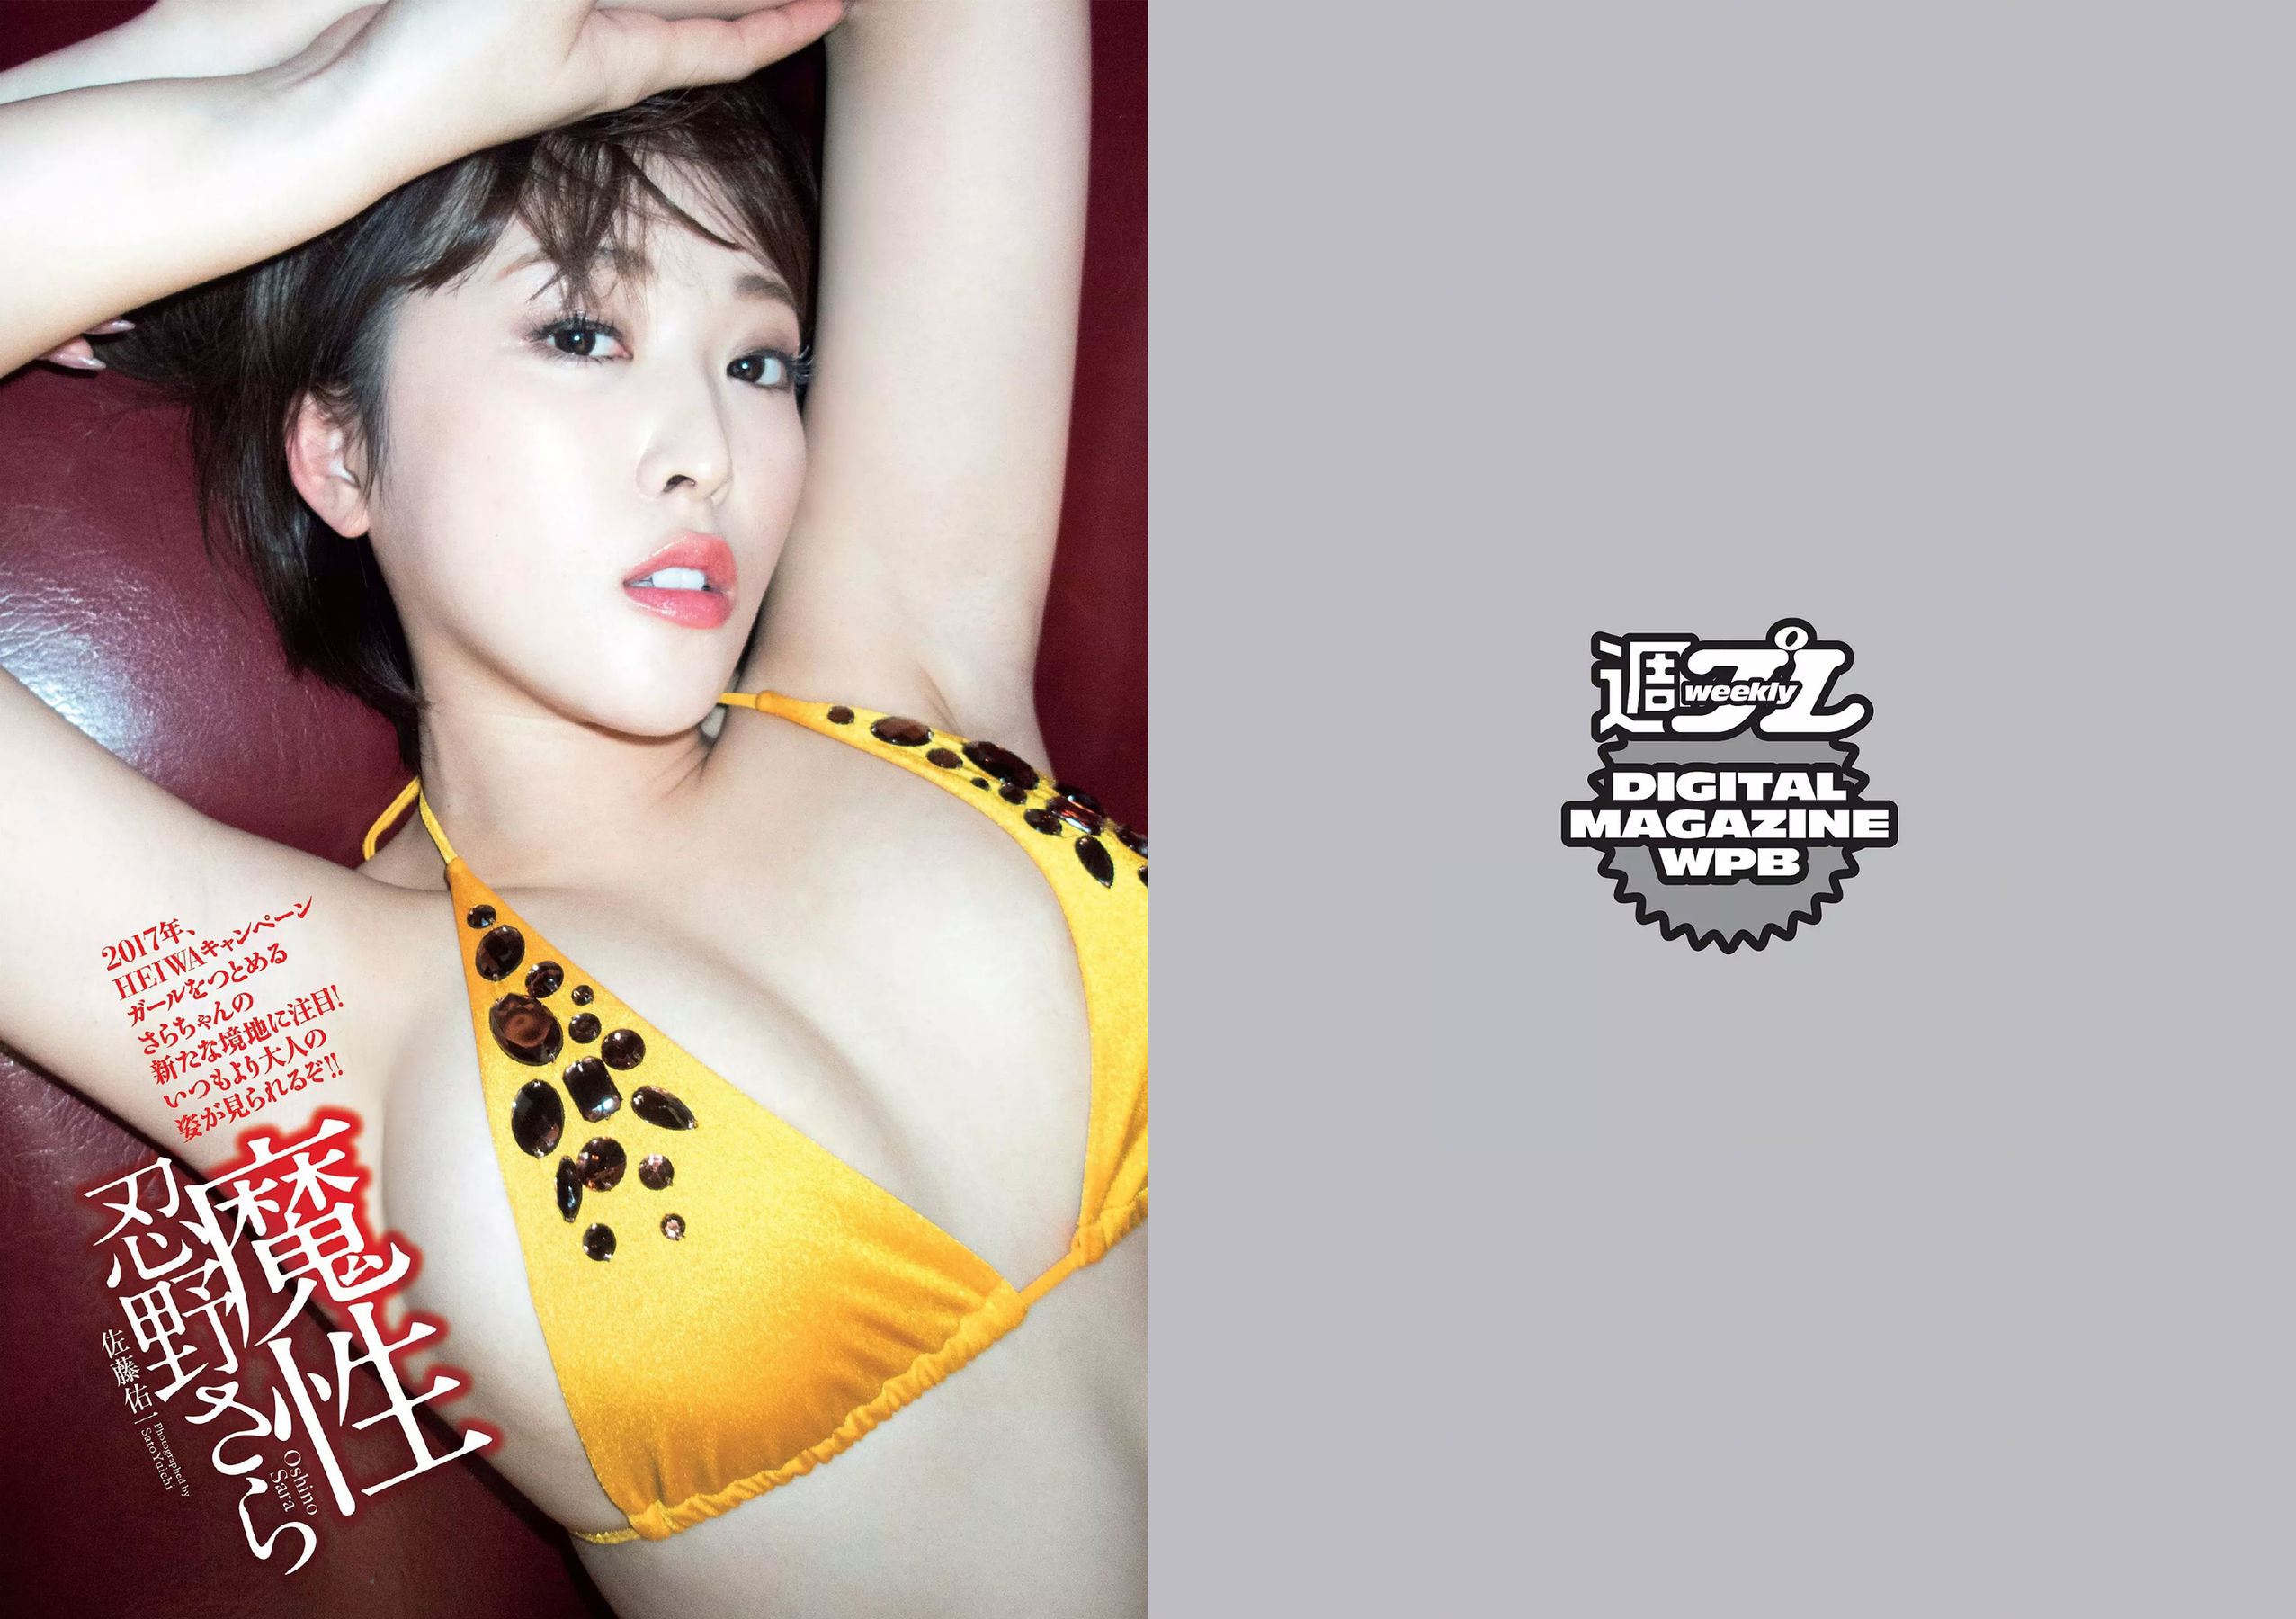 Yuno Ohara Miona Hori Nana Kato Miki Sato [Wöchentlicher Playboy] 2017 Nr. 49 Foto Mori Seite 24 No.bf9766